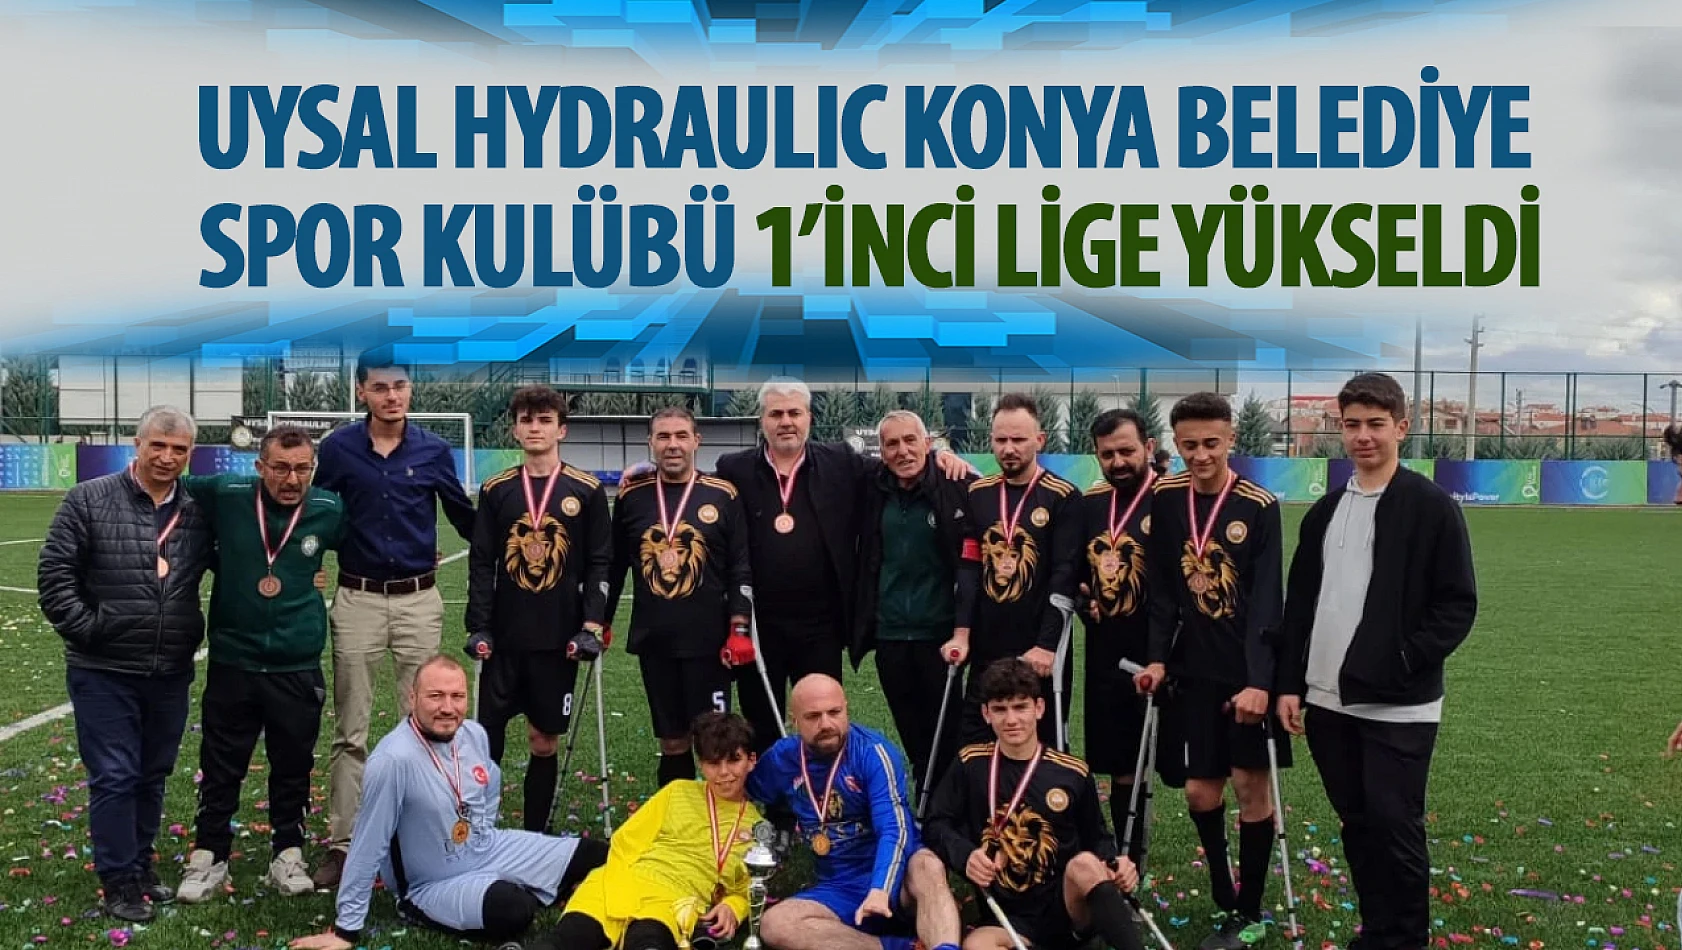 Uysal Hydraulic Konya Belediye Spor Kulübü'nden 1'inci Lig'e yükseliş!